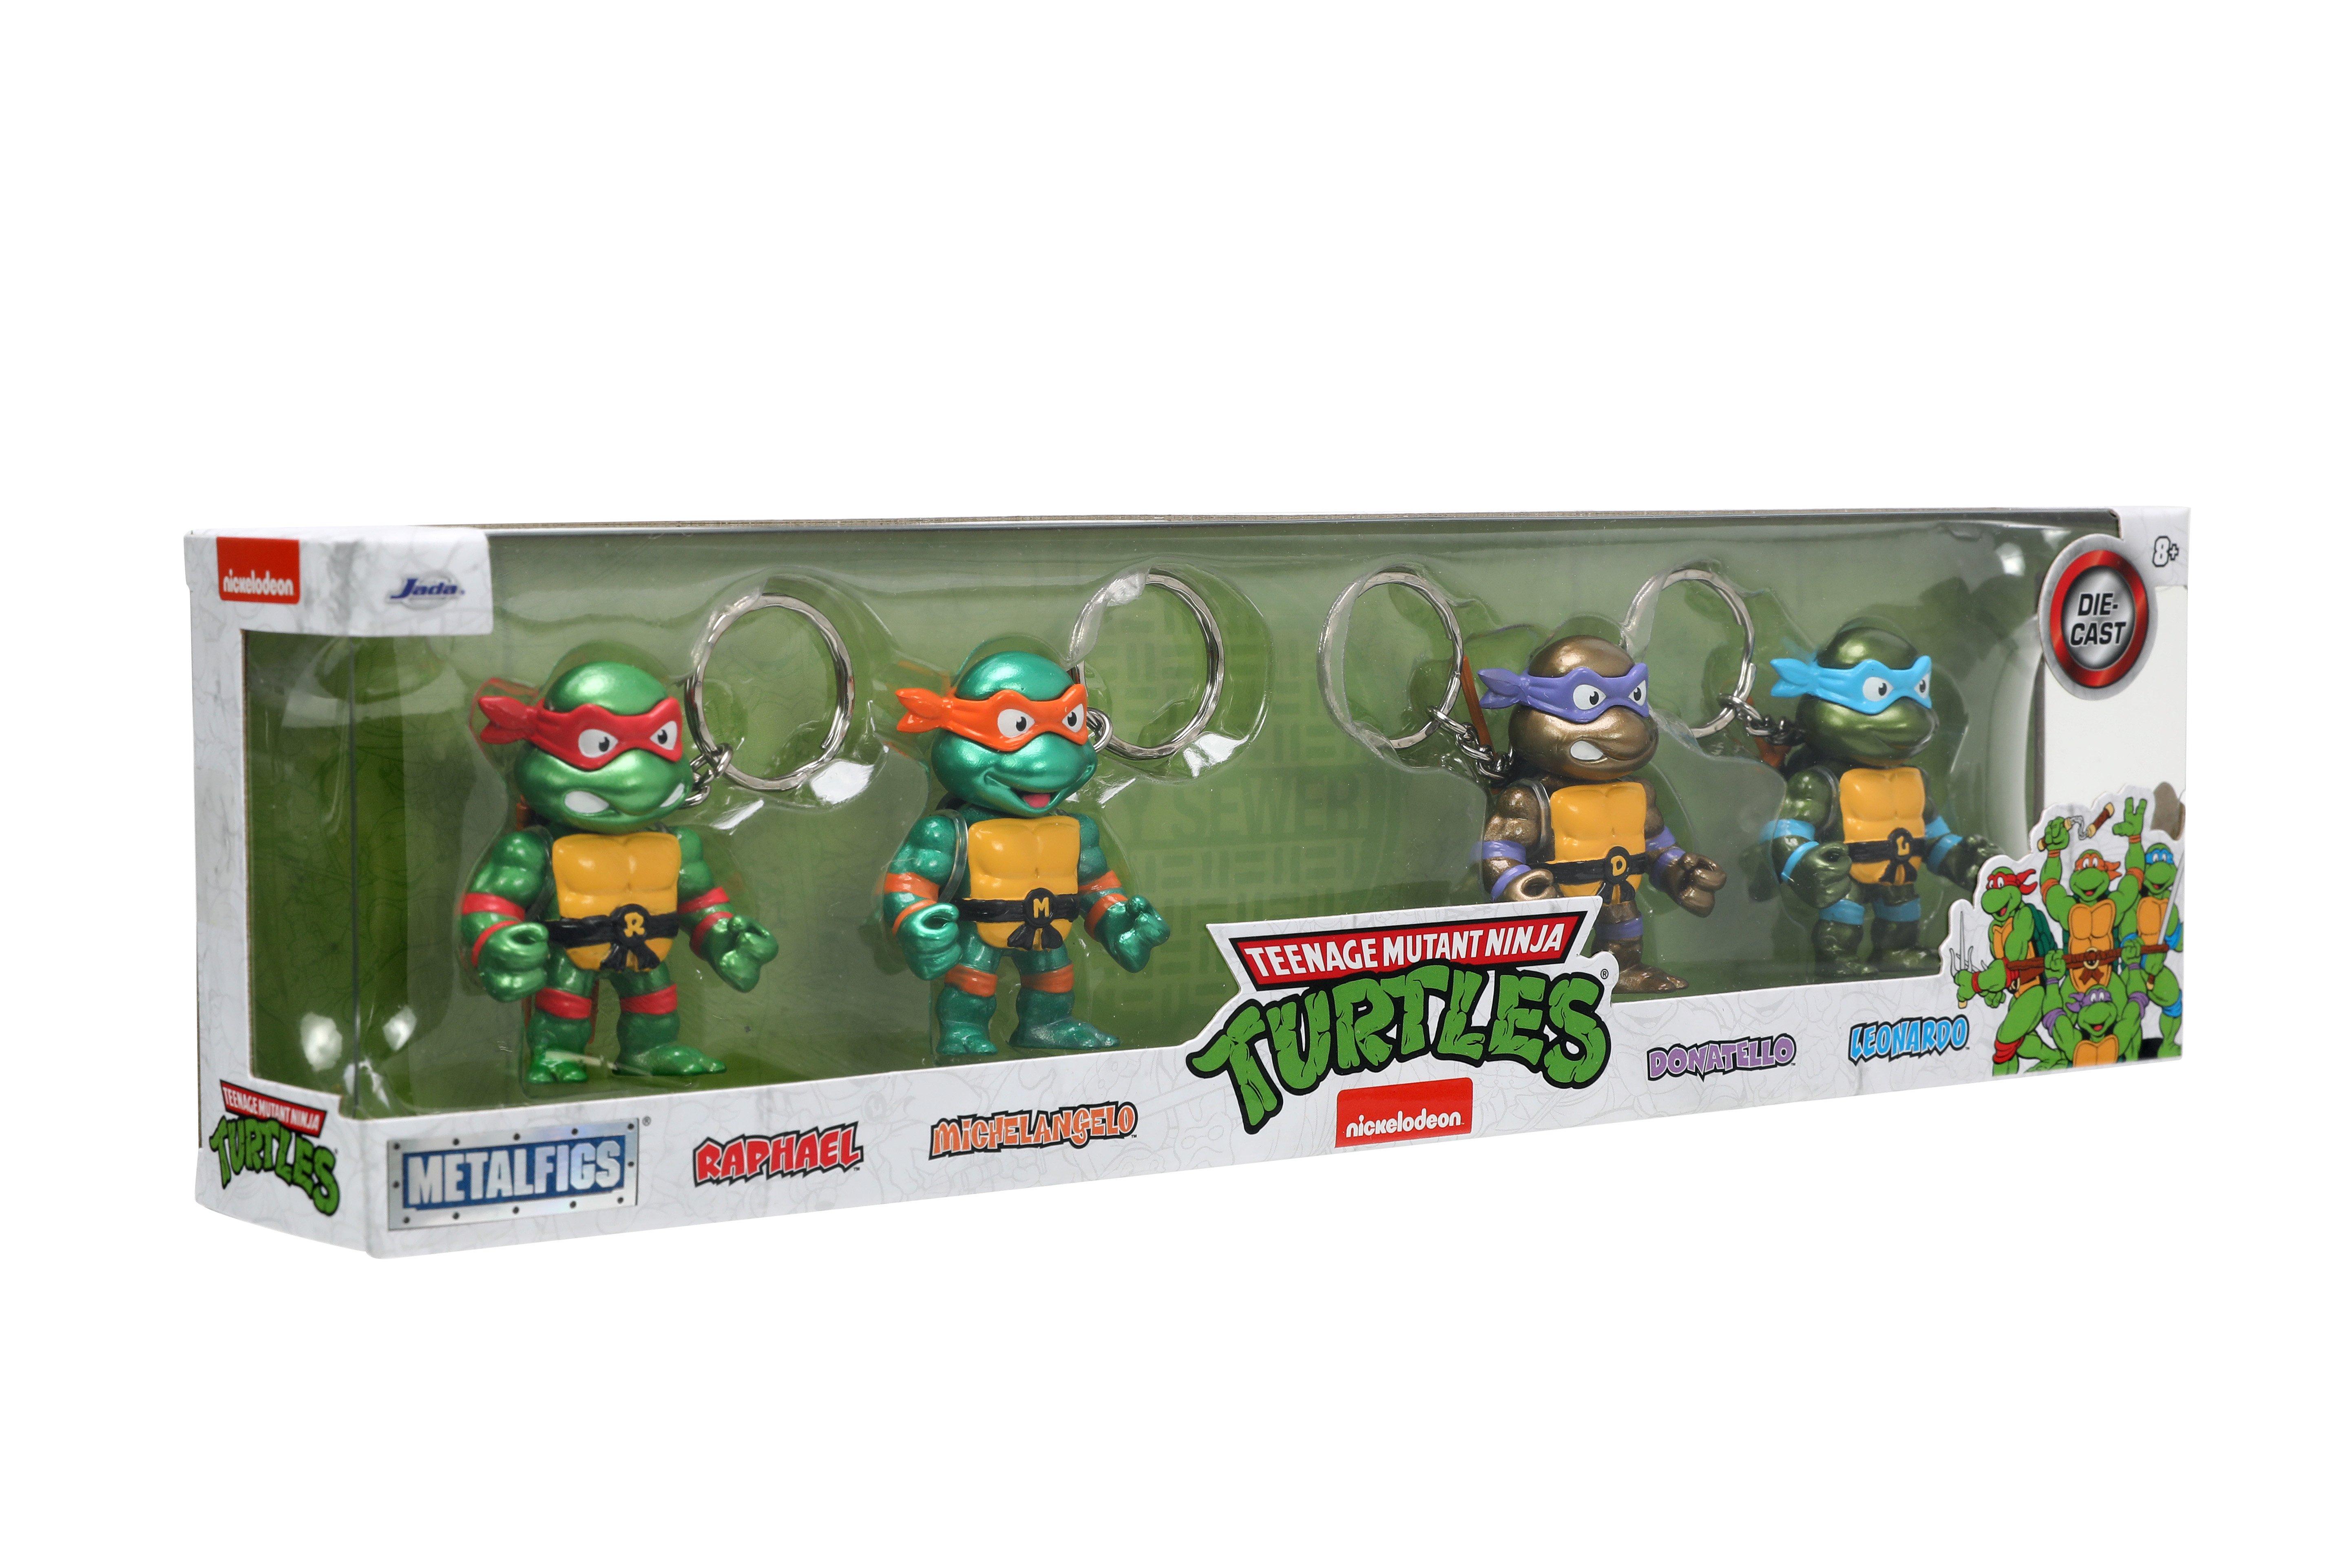 https://media.gamestop.com/i/gamestop/11186648_ALT18/Jada-Toys-Teenage-Mutant-Ninja-Turtles-2.5-in-Metalfigs-Keychain-4-Pack-GameStop-Exclusive?$pdp$